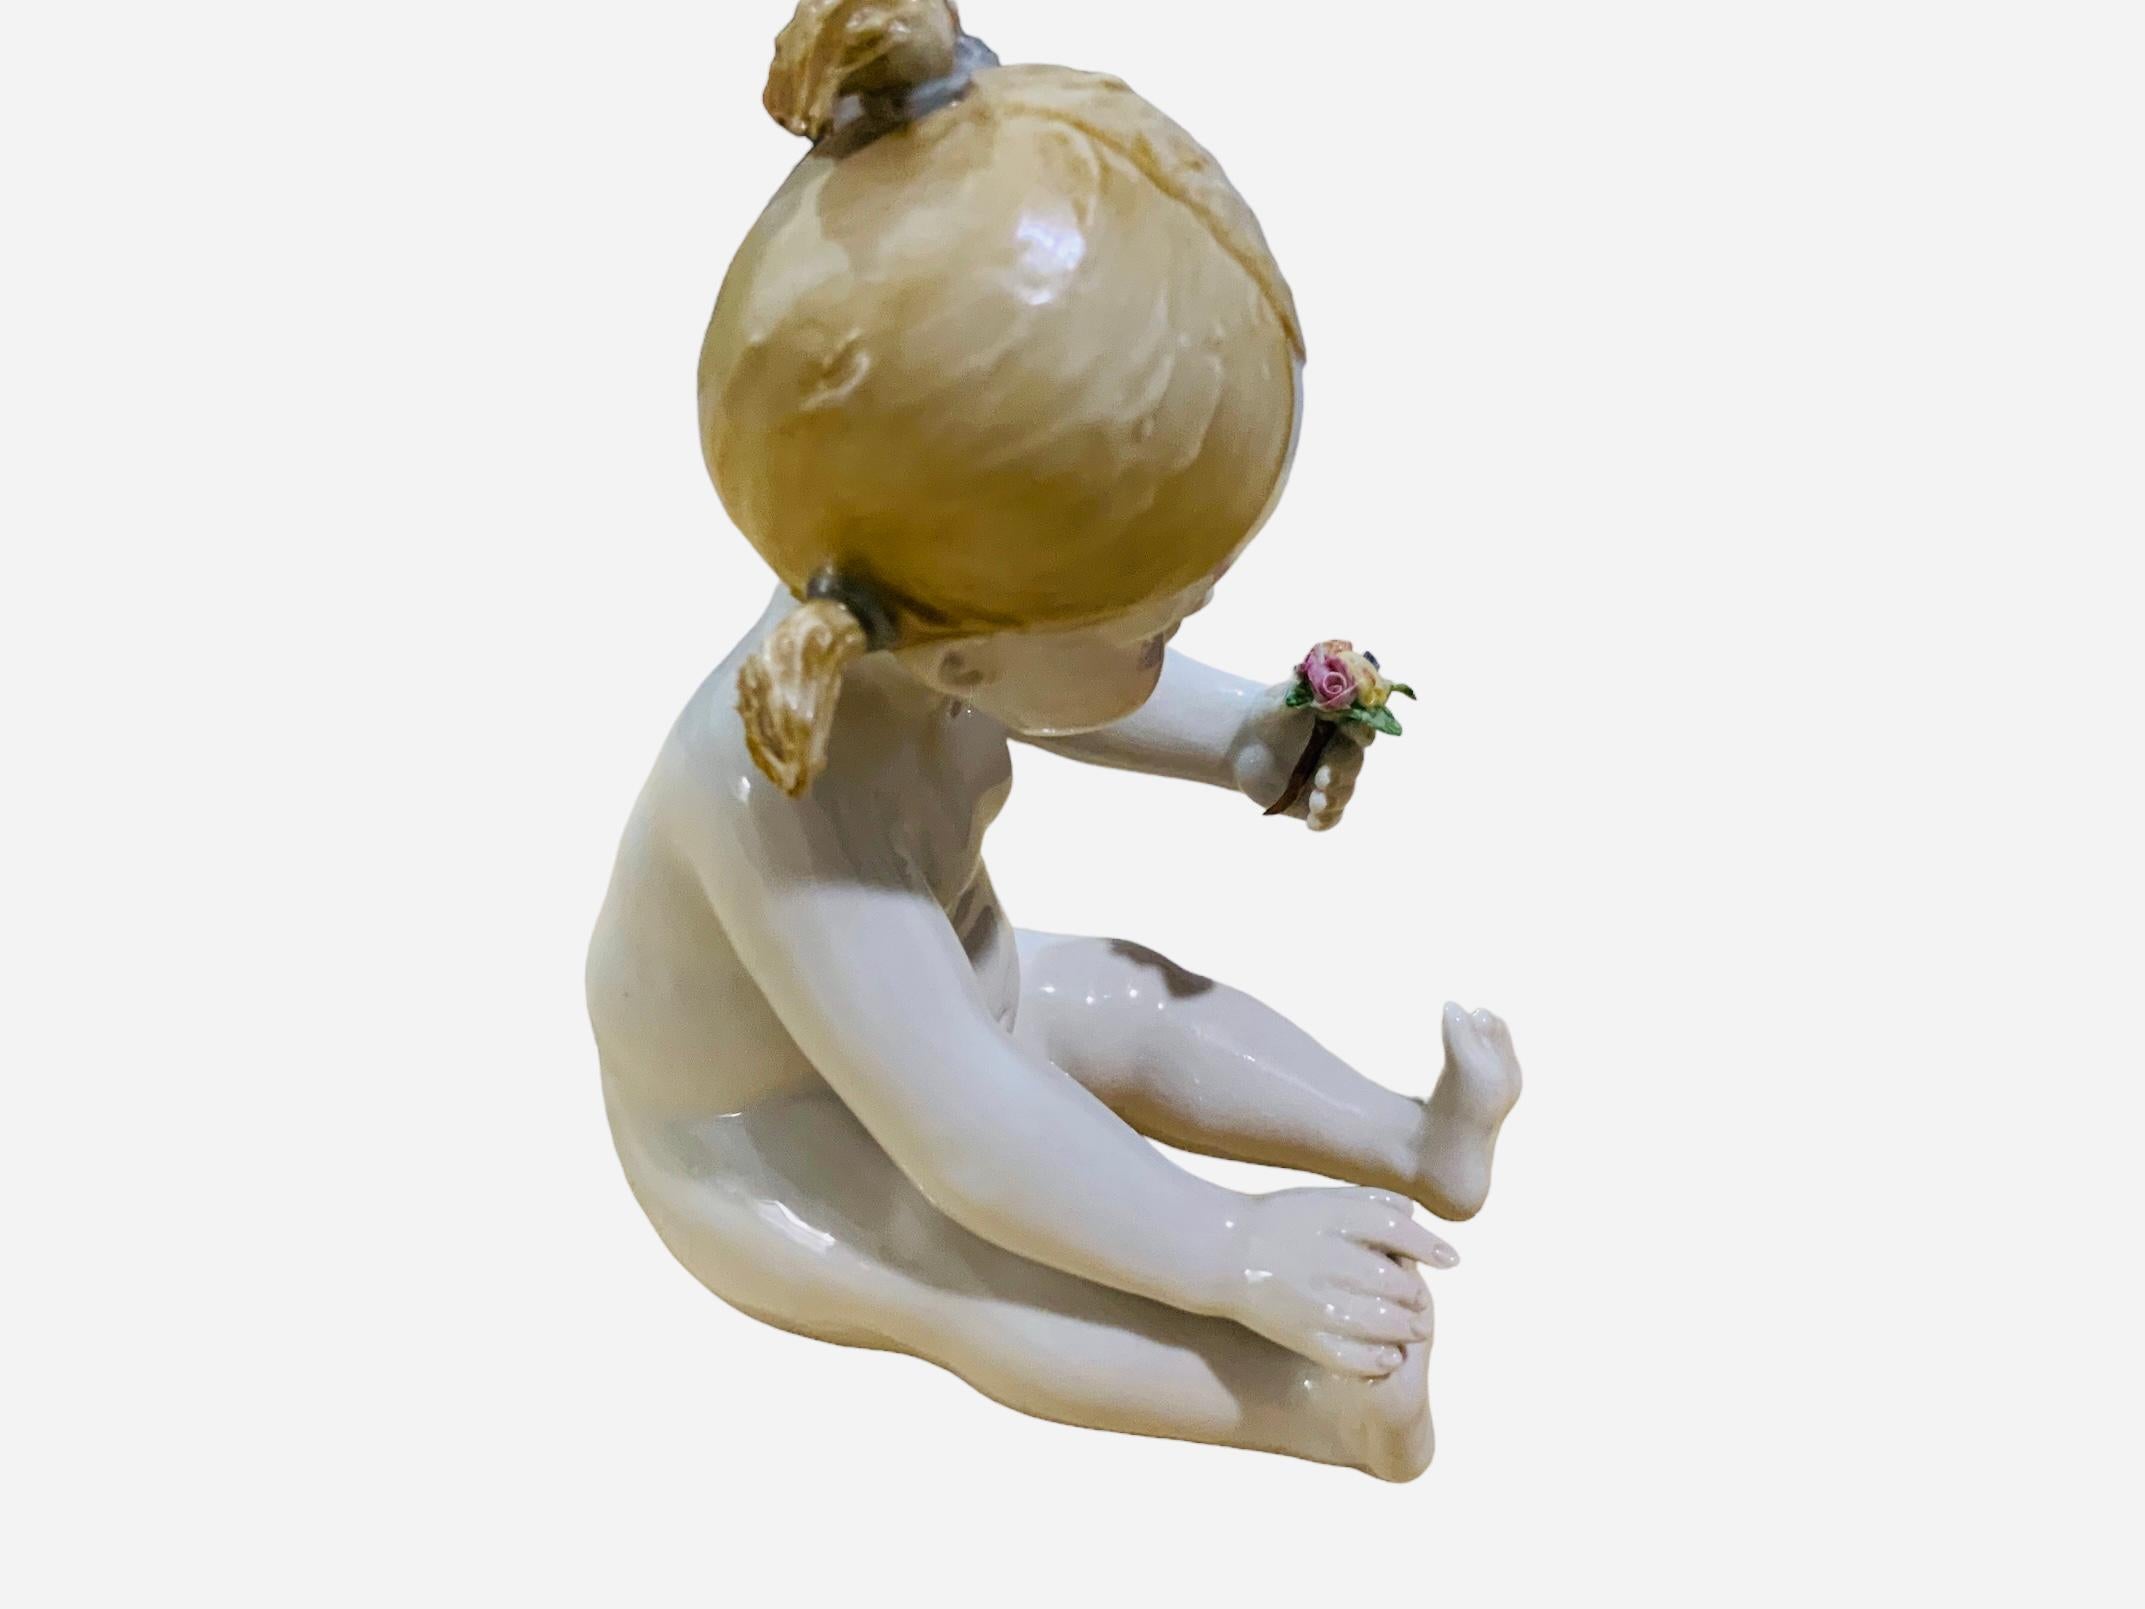 Dies ist ein italienisches Capodimonte Porzellan Baby Girl Piano Figur. Es zeigt ein nacktes kleines Mädchen mit großen blauen Augen und blondem, zu einem Pferdeschwanz gebundenem Haar, das sich hinsetzt und einen Blumenstrauß bewundert, den es mit